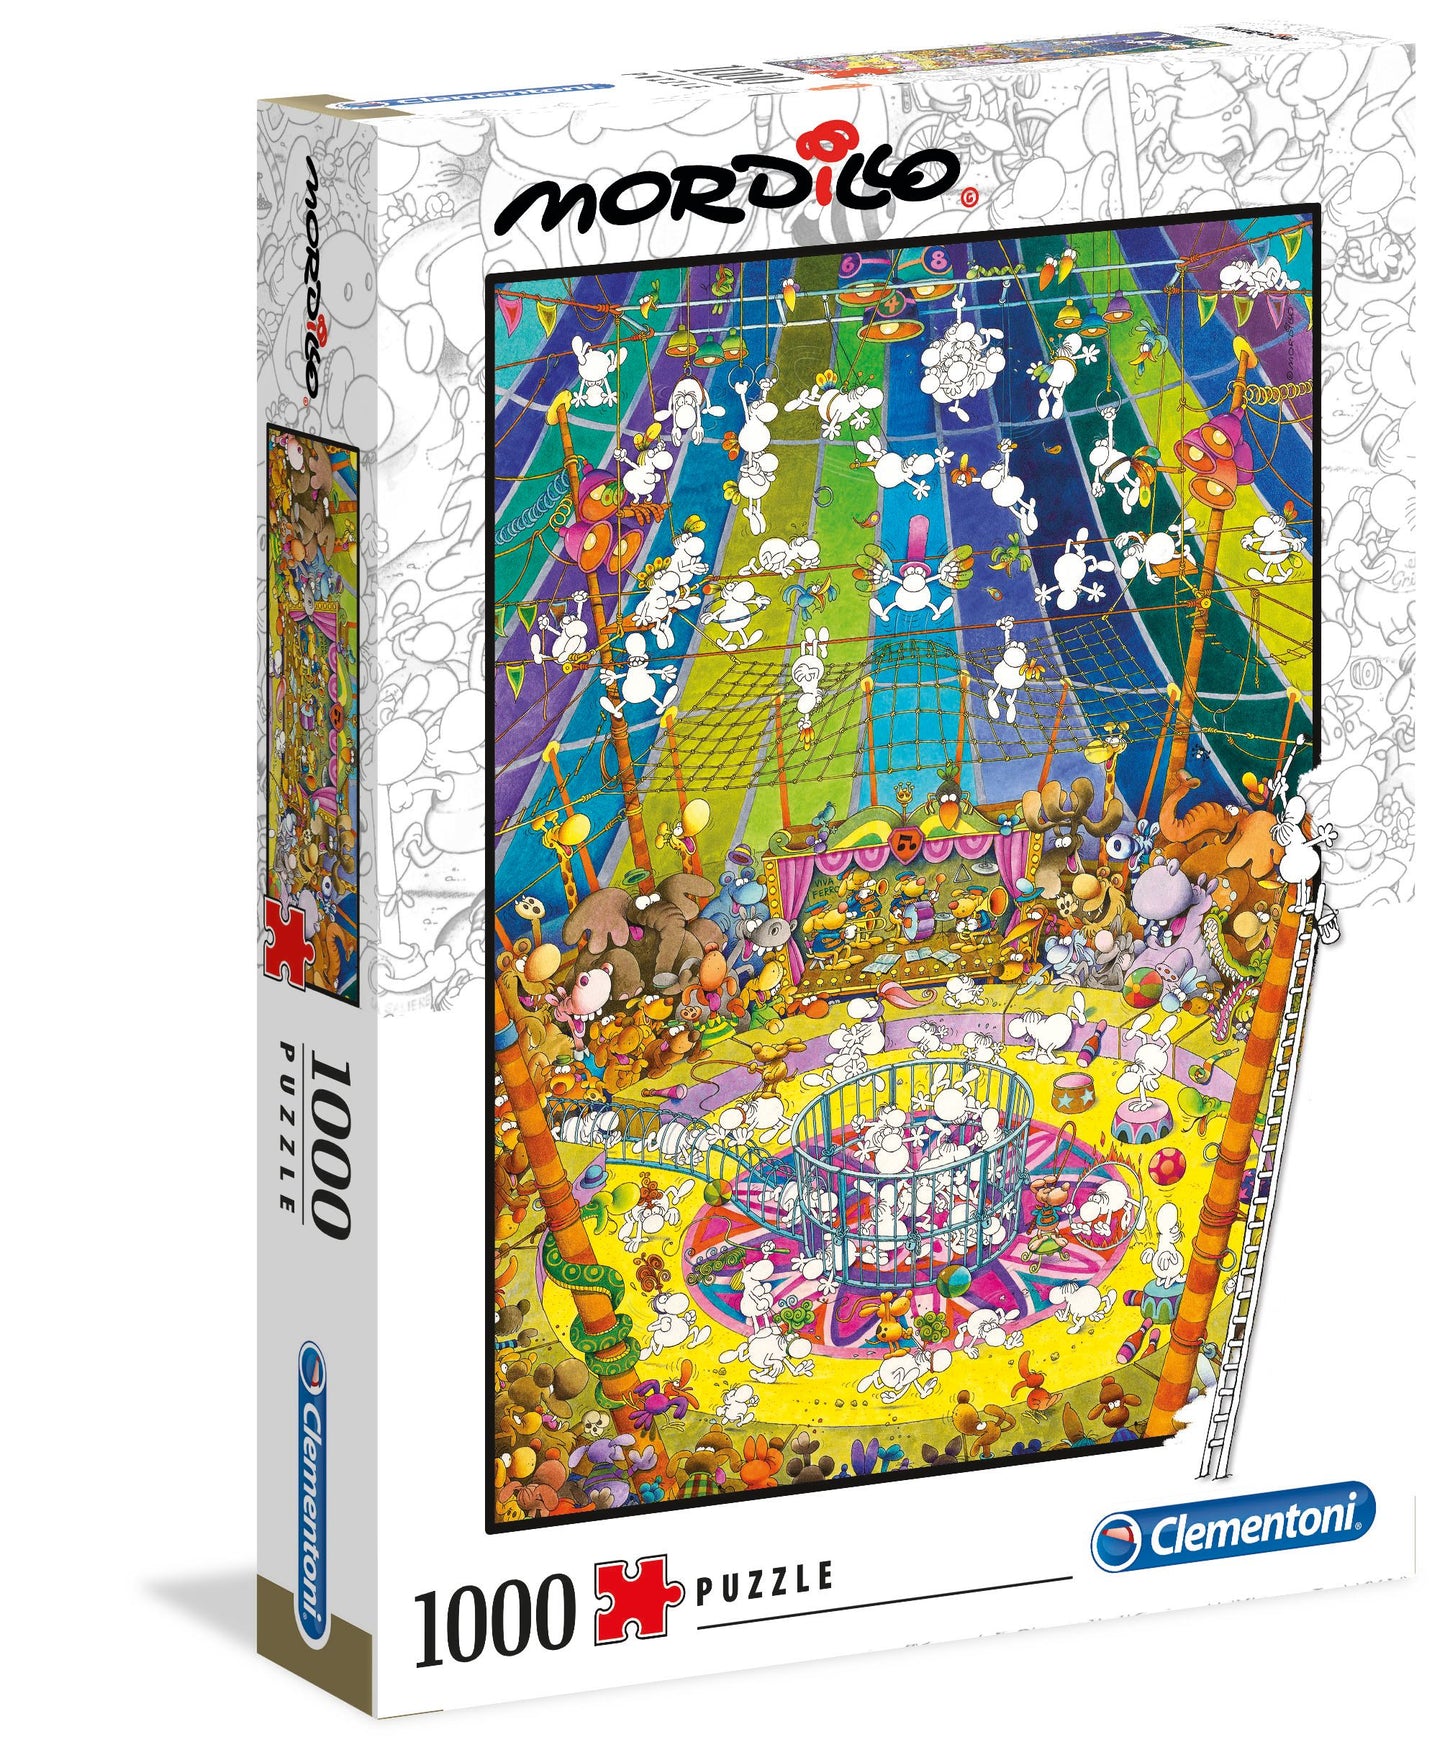 The Show by Mordillo, 1000 Piece Puzzle